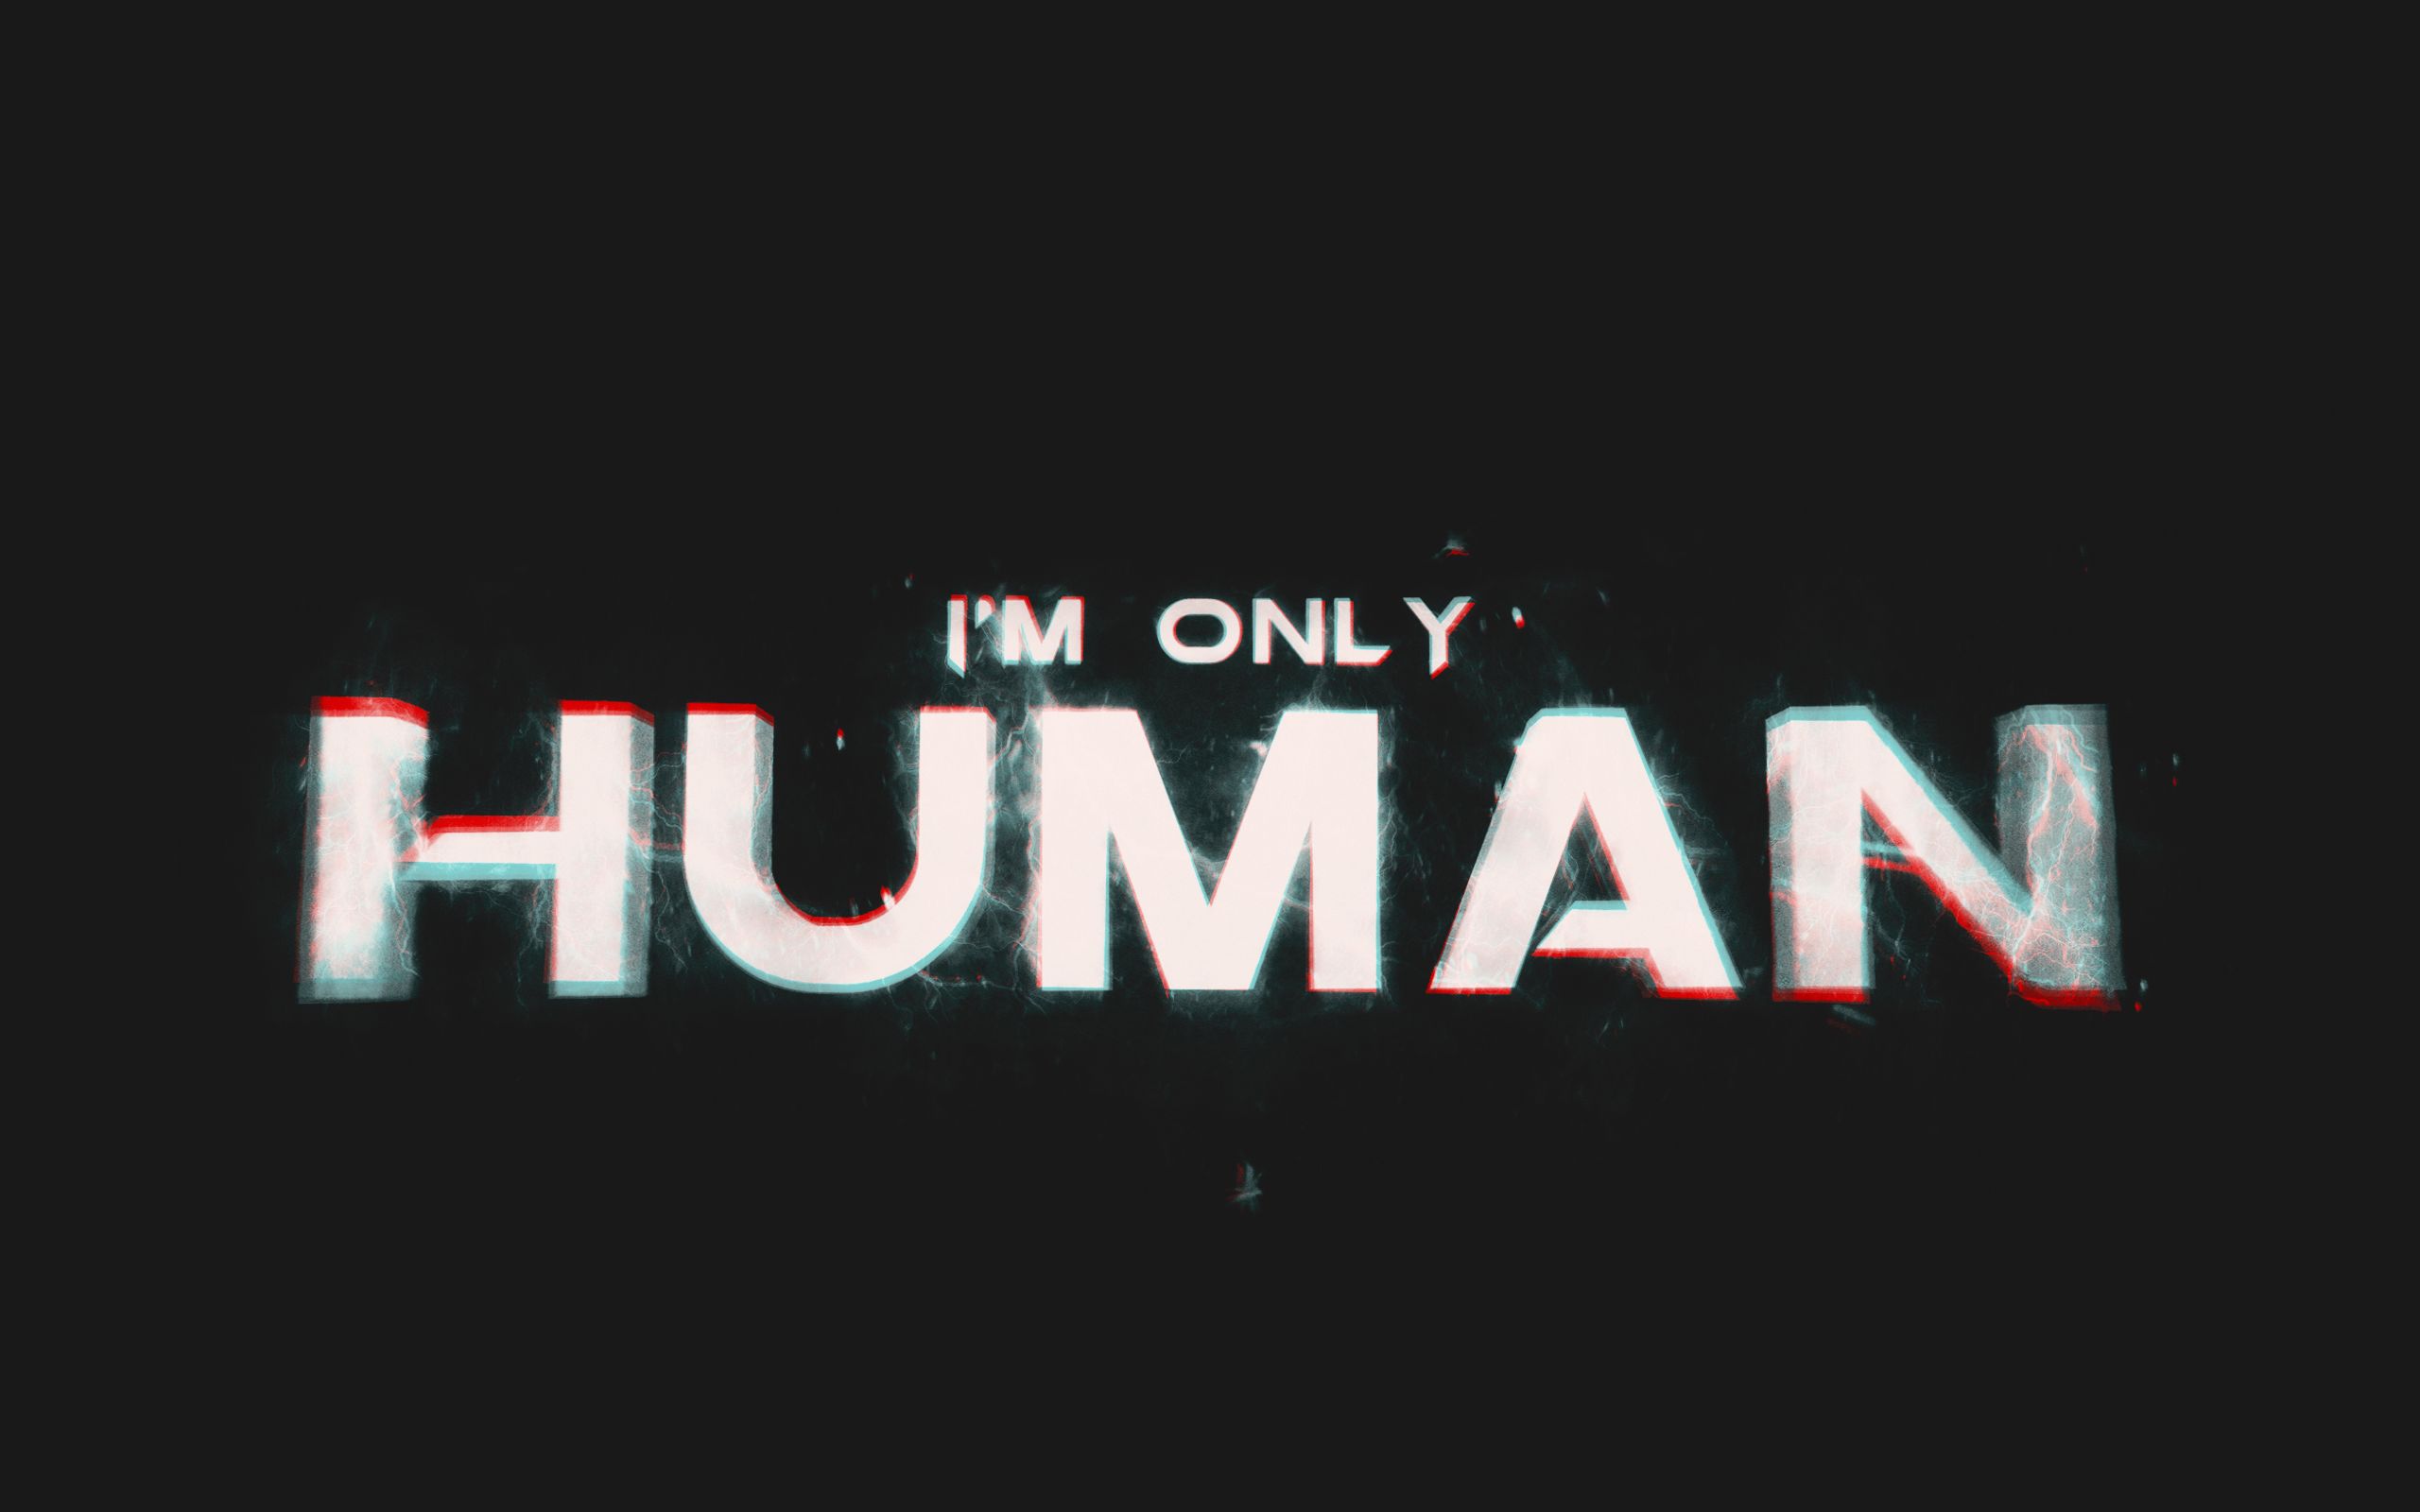 Only human todd. I M only Human. Only Human. Only Human Todd Burns. Im only Human after all.